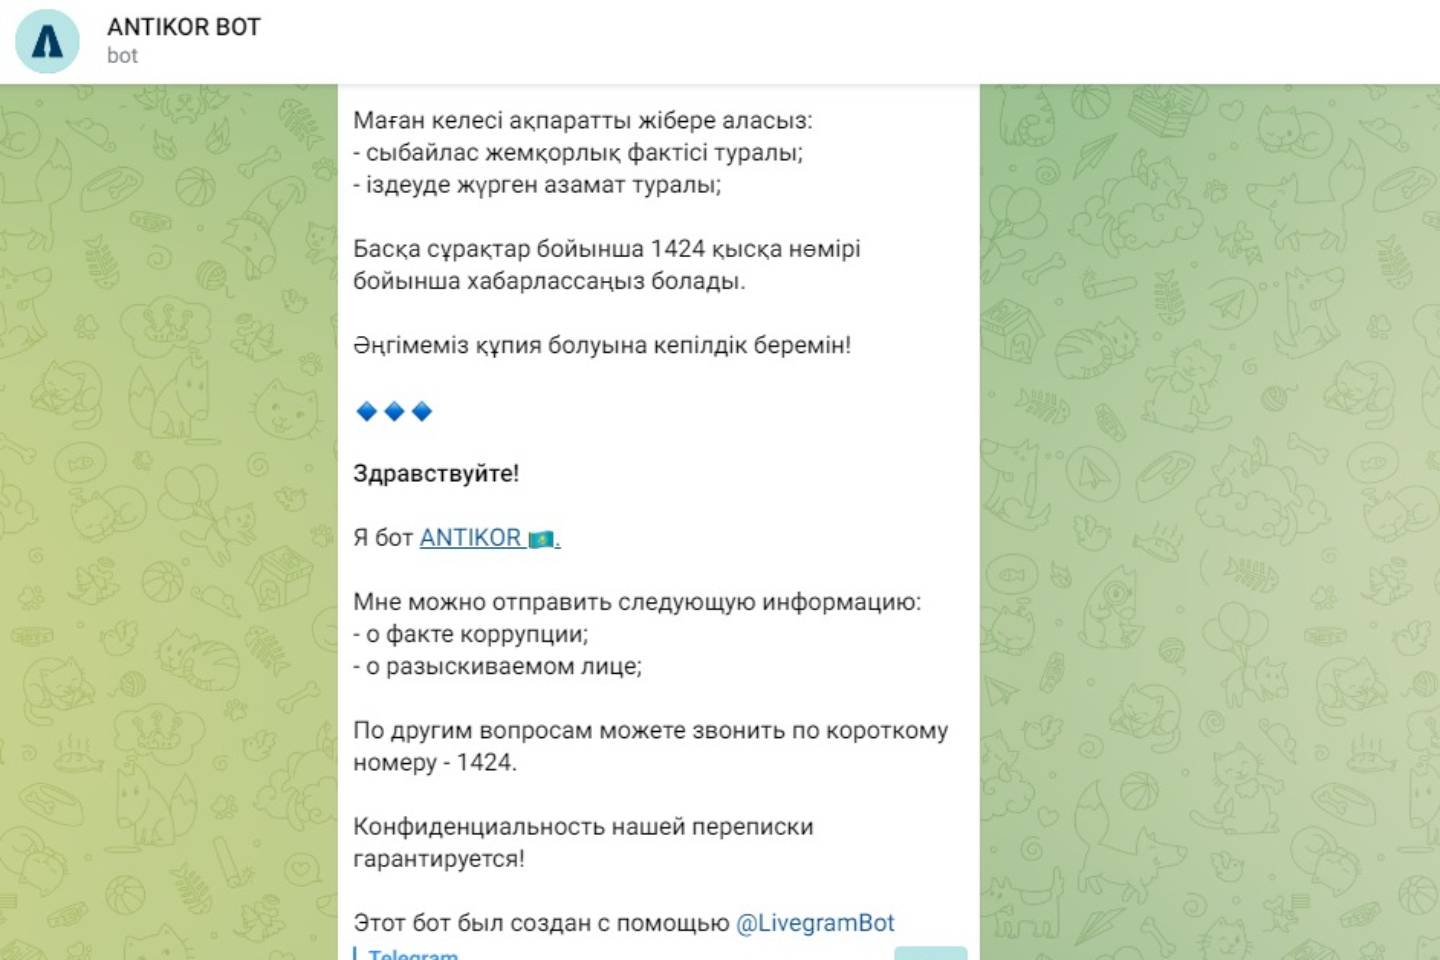 Новости Казахстана / Общество в Казахстане / Казахстанцы могут сообщать о фактах коррупции через Telegram